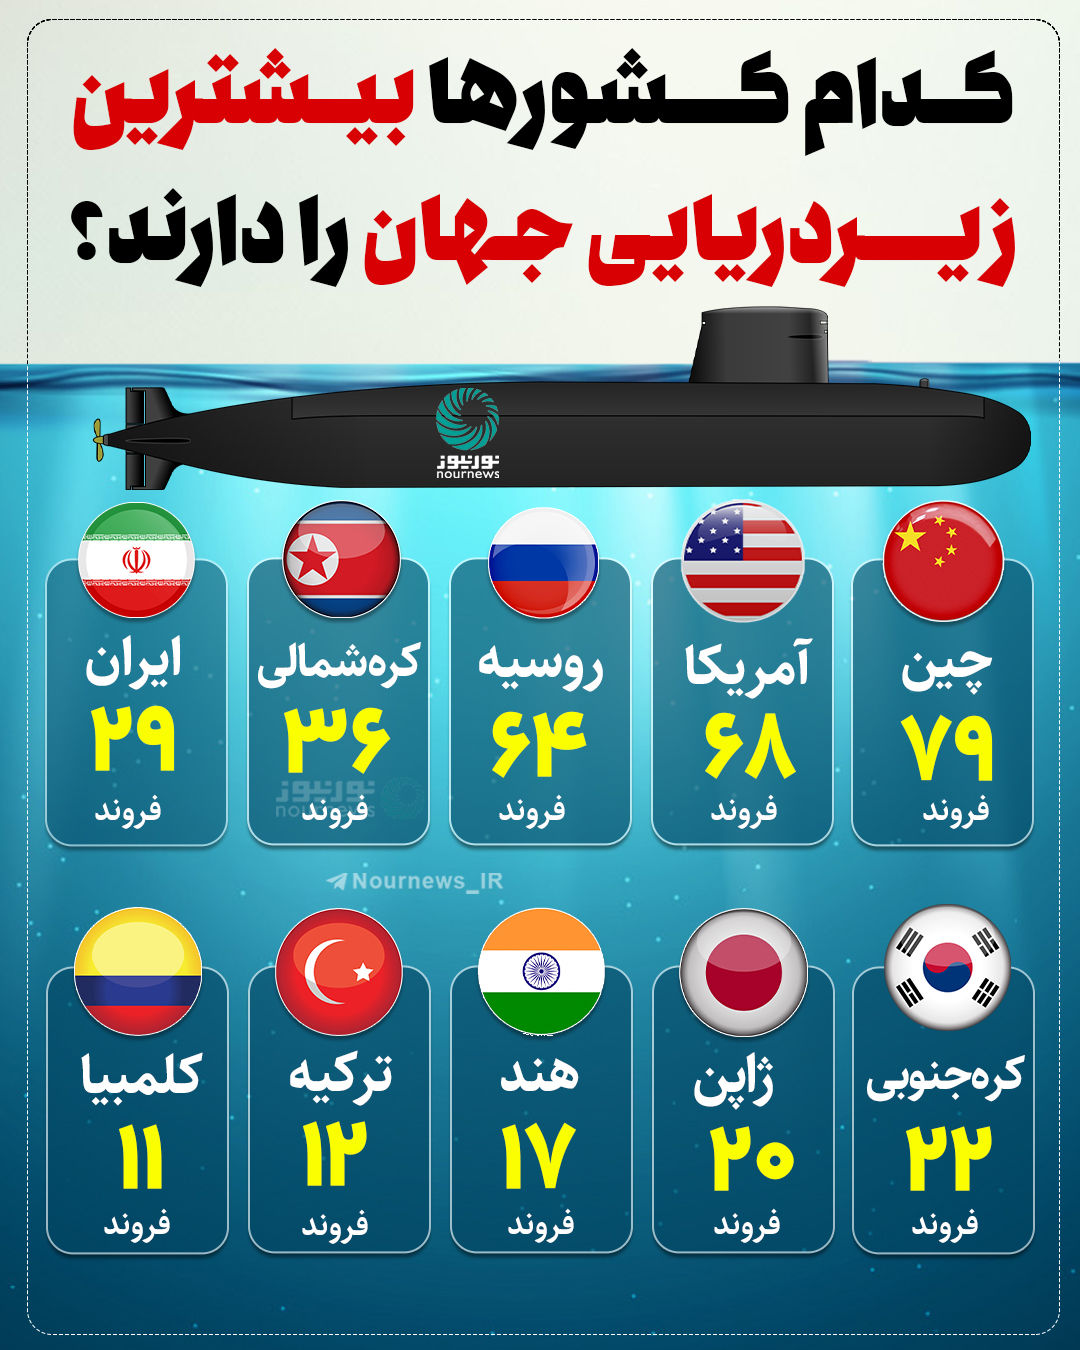 اینفوگرافی: کدام کشورها بیشترین زیردریایی را در اختیار